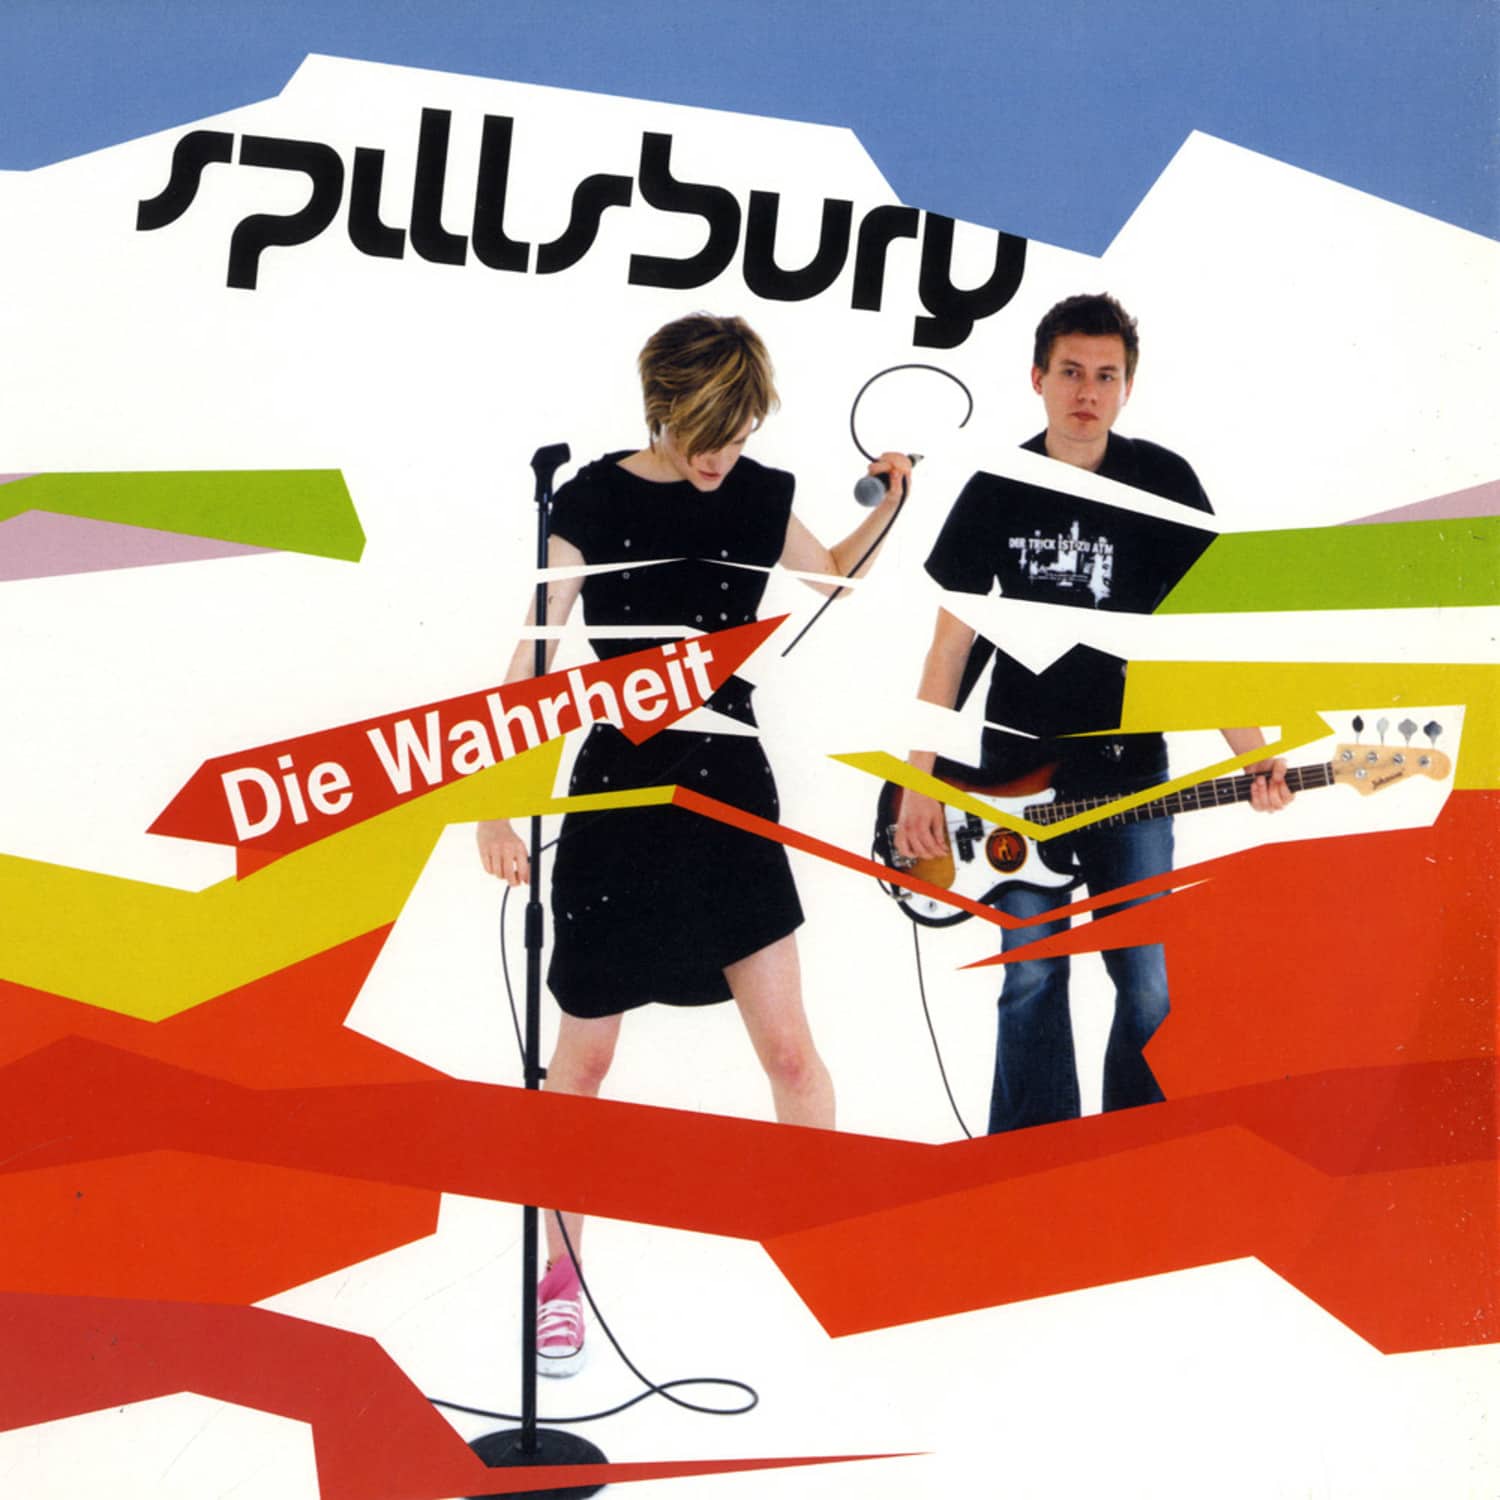 Spillsbury - DIE WARHEIT